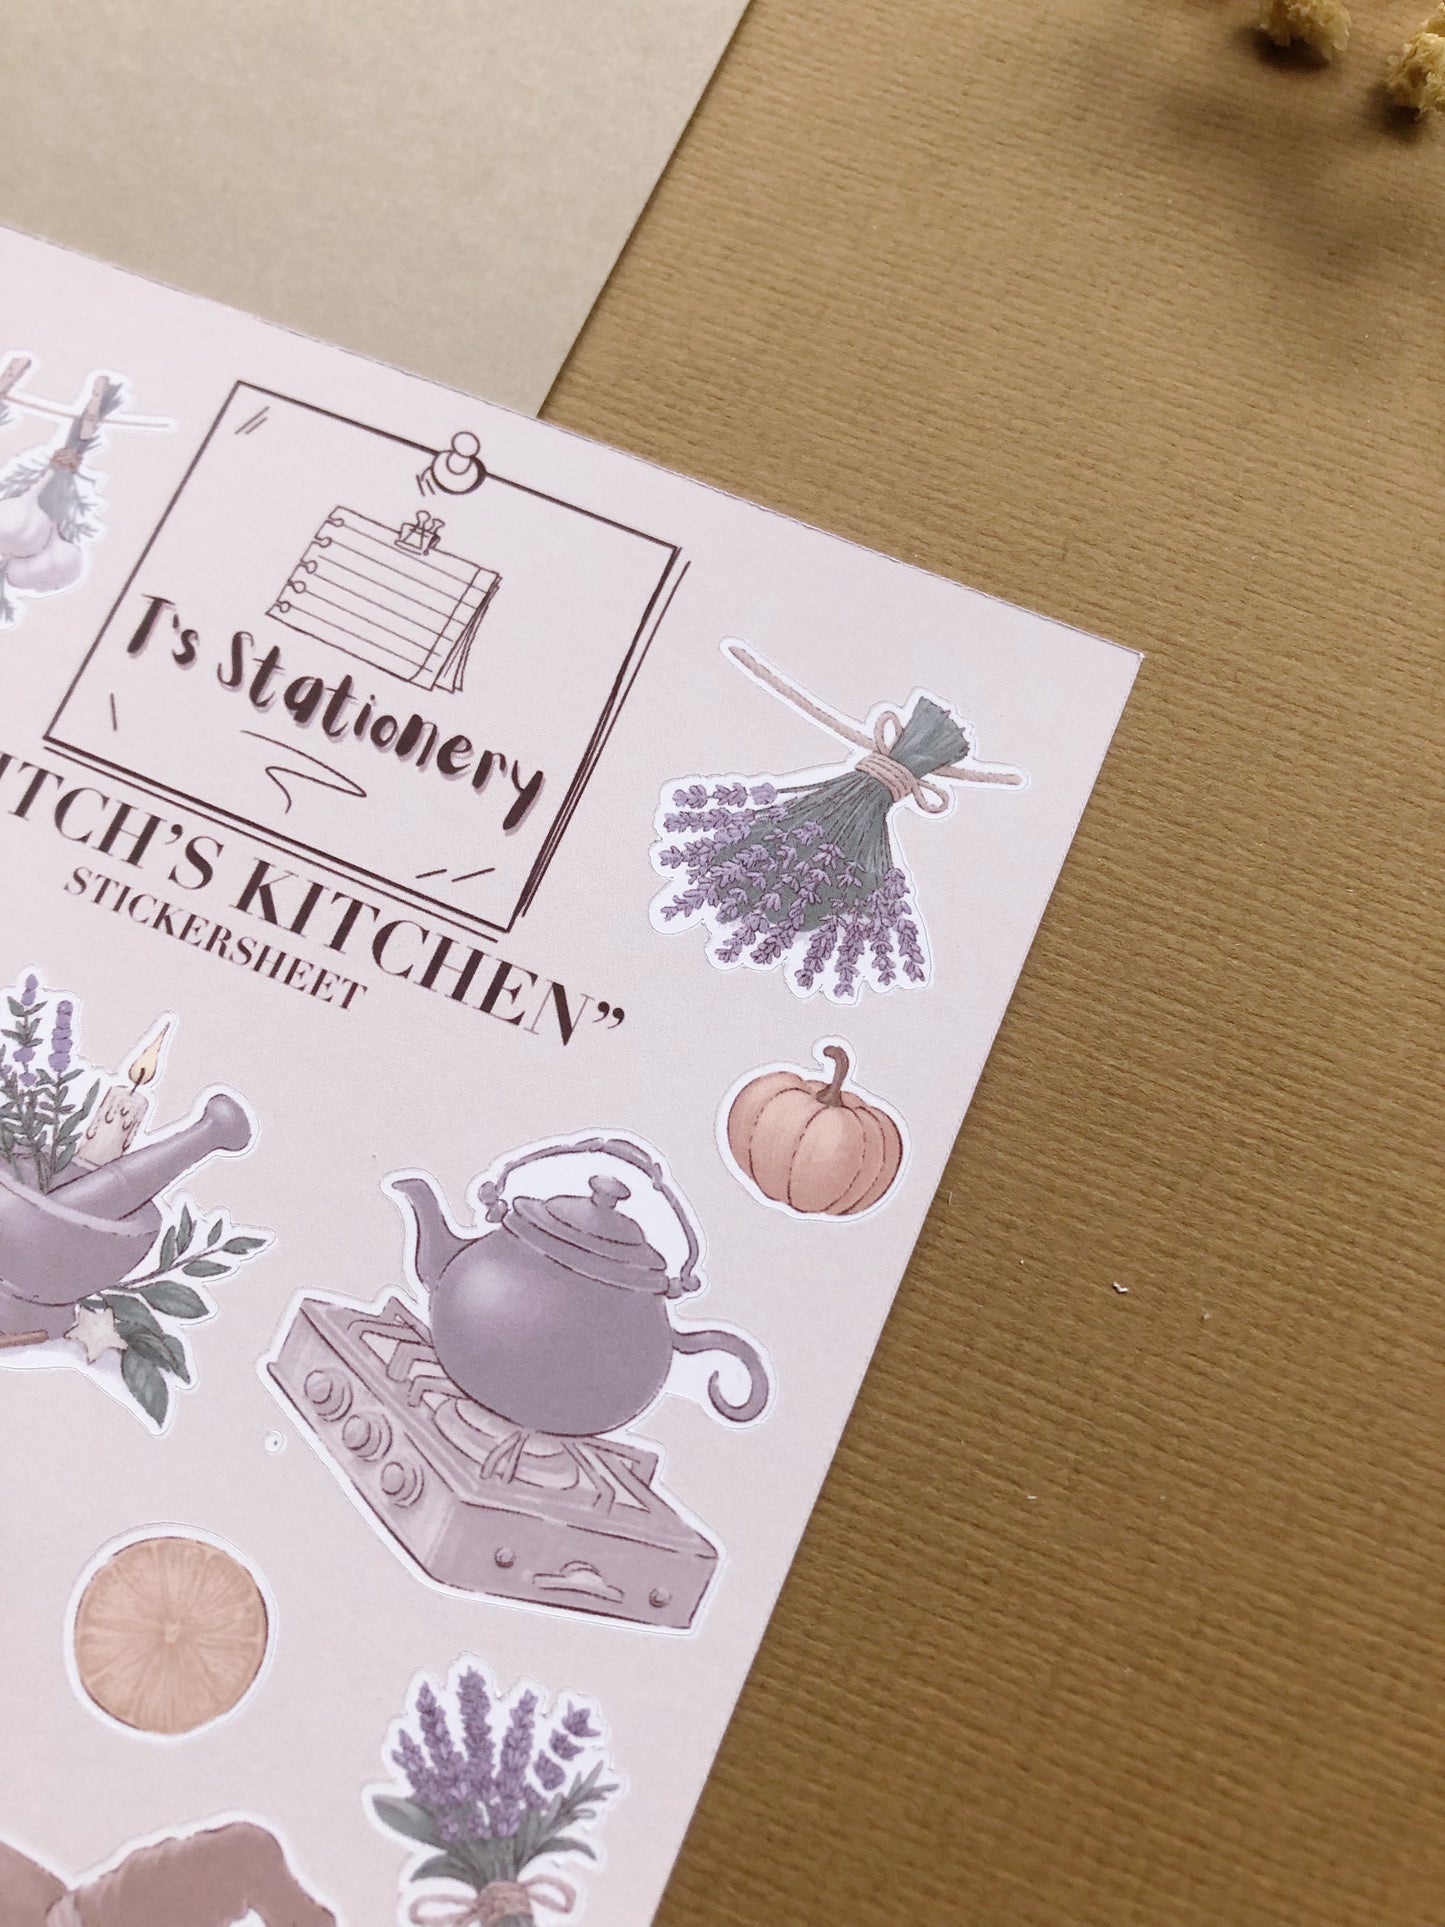 "Witchy Kitchen Sticker Sheet"